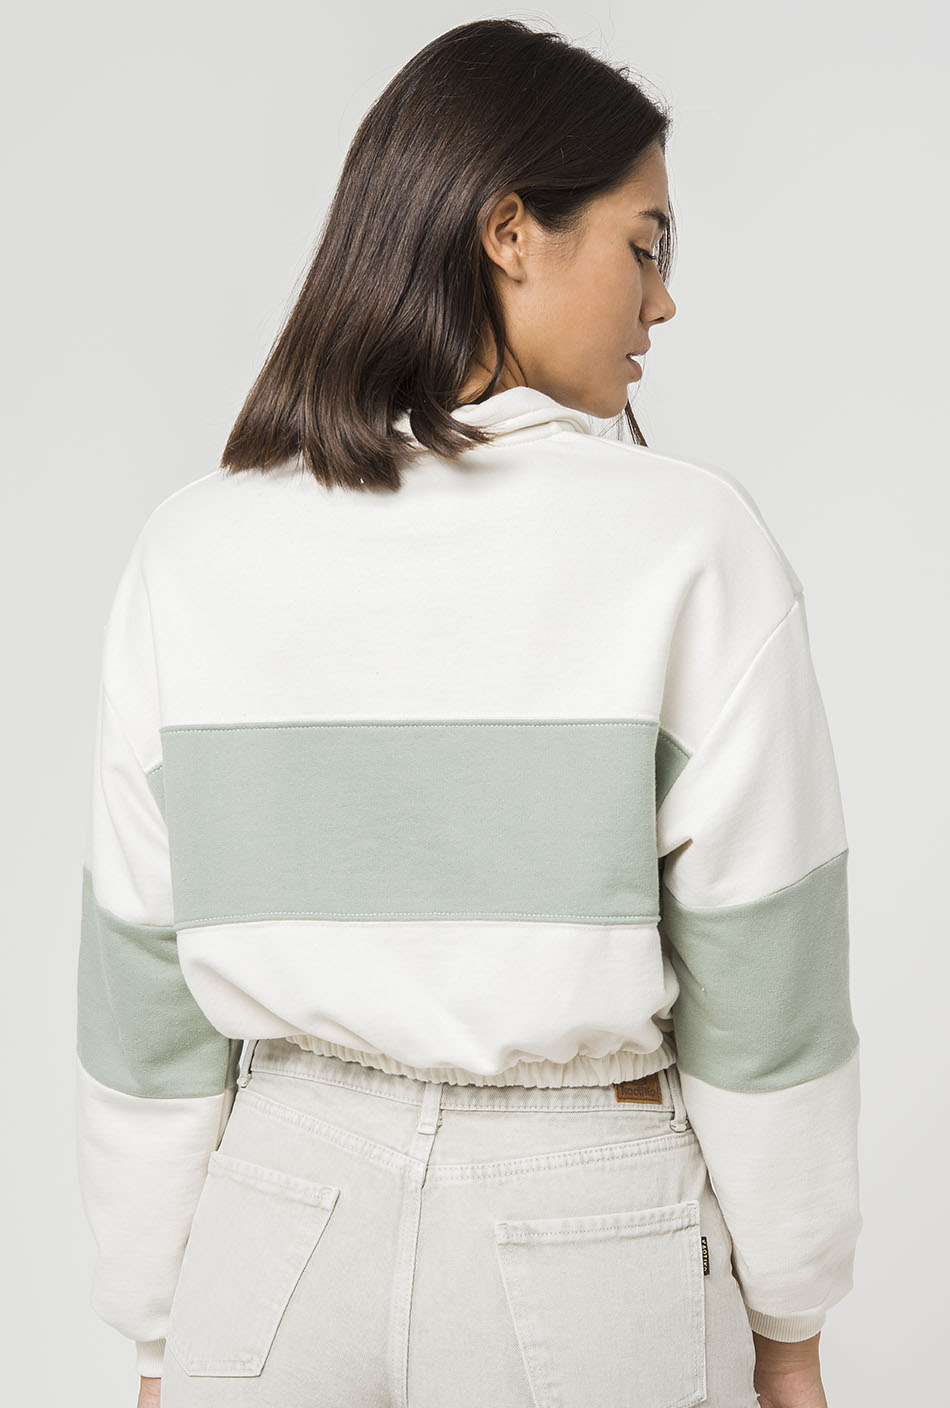 Gaynor Offfwhite/ Fresh Green sweatshirt